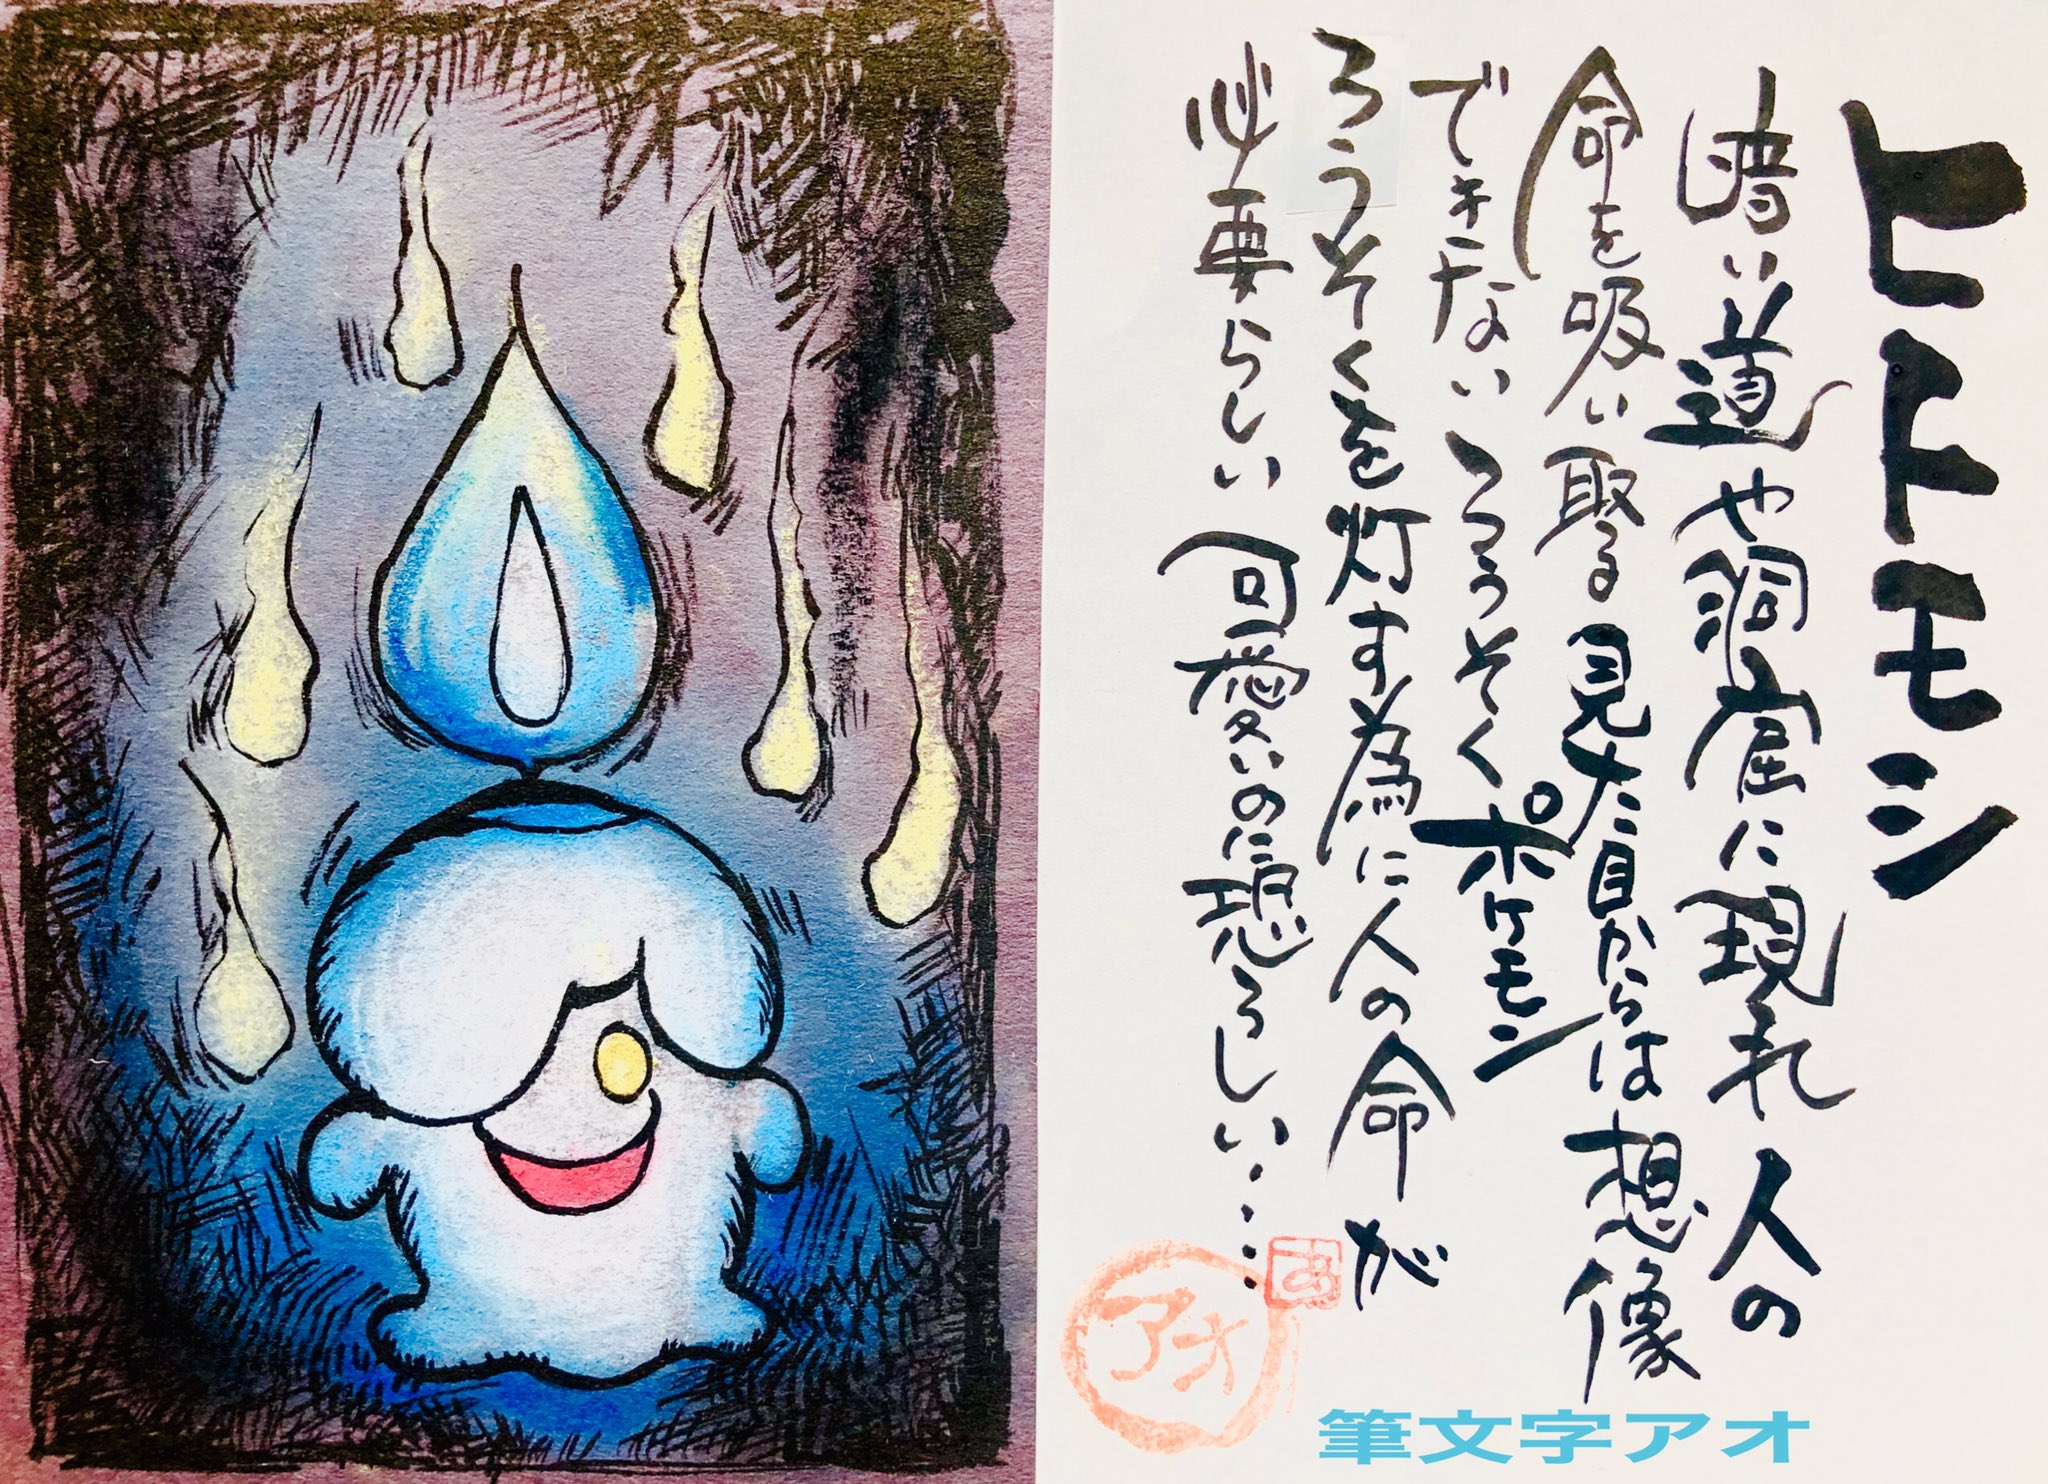 Uzivatel Aki Shimamoto ポケモン絵師休憩中エネルギーアートクリエーター Na Twitteru 筆ペンでポケモンを描く ヒトモシ 暗い道や洞窟に現れ人の命を吸い取る 見た目からは想像できないろうそくポケモン ろうそくを灯すために人の命が必要らしい 可愛いのに恐ろしい